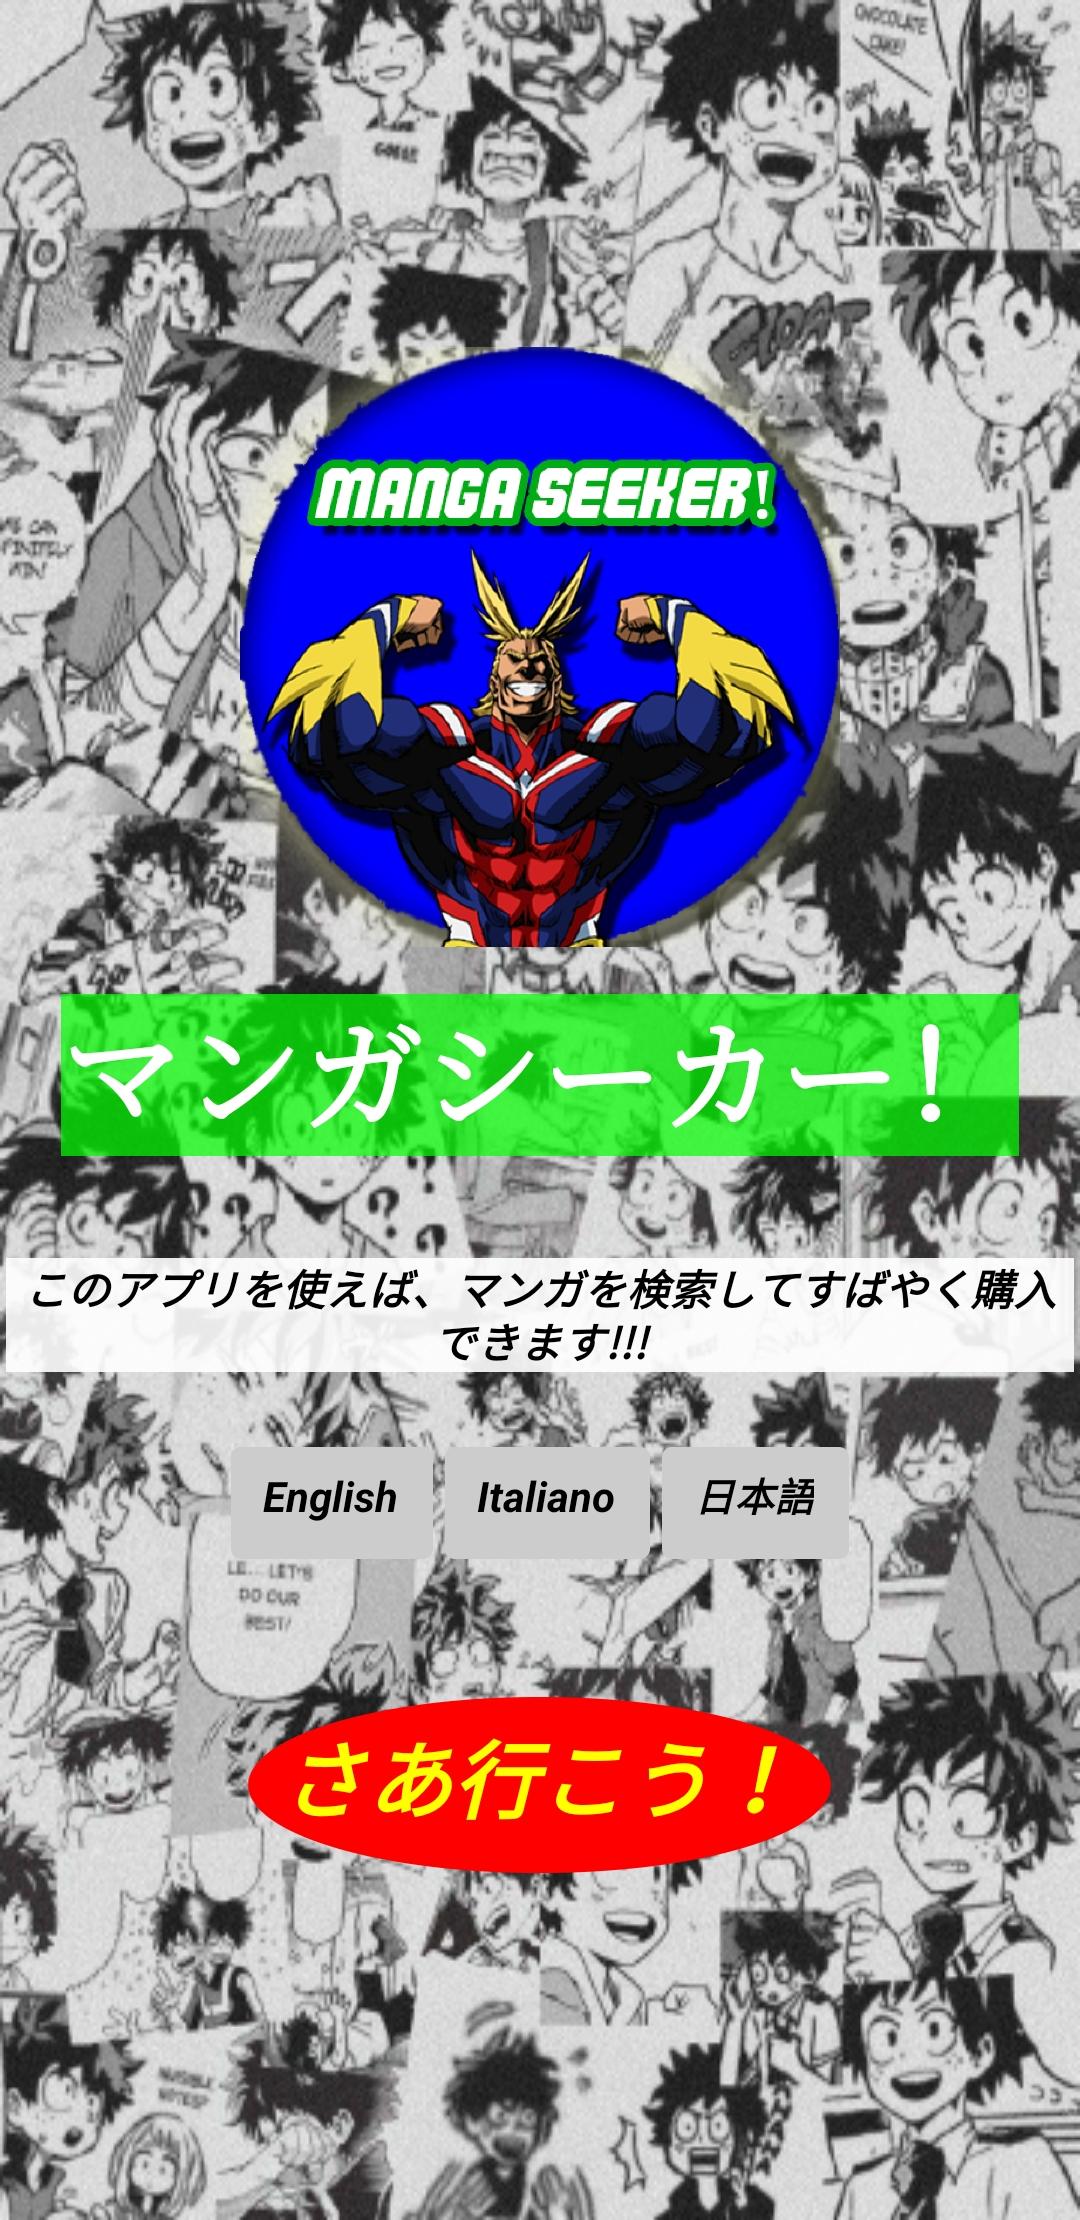 Manga Seeker! 1.1 Screenshot 5